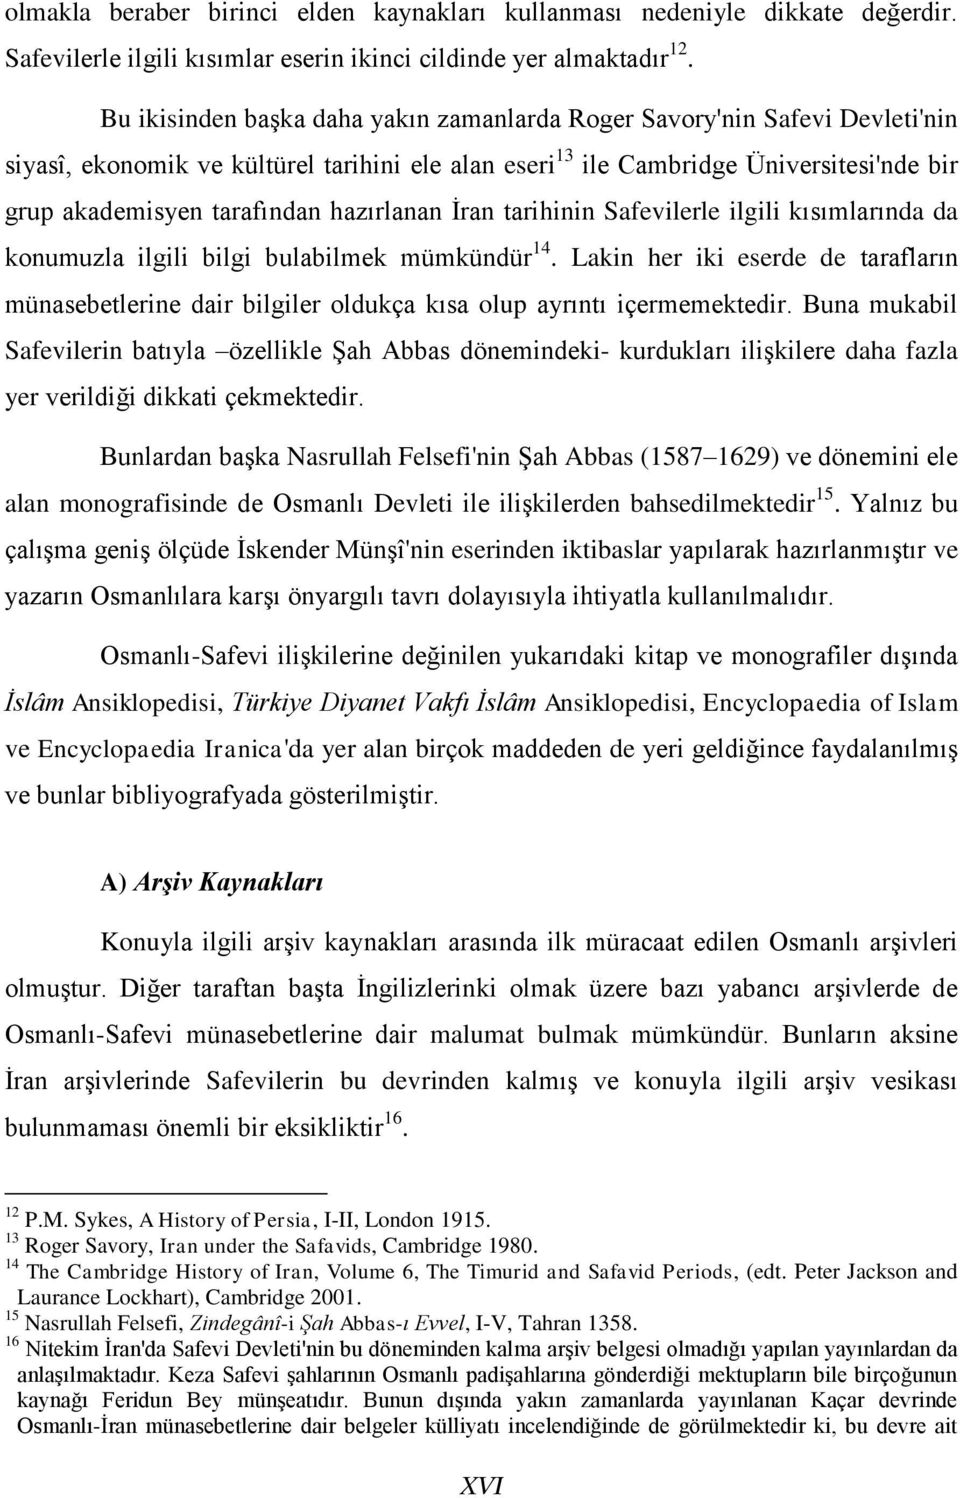 Osmanli Safevi Iliskileri Ve Caldiran Savasi Neden Ve Sonuclari Kisaca 2020